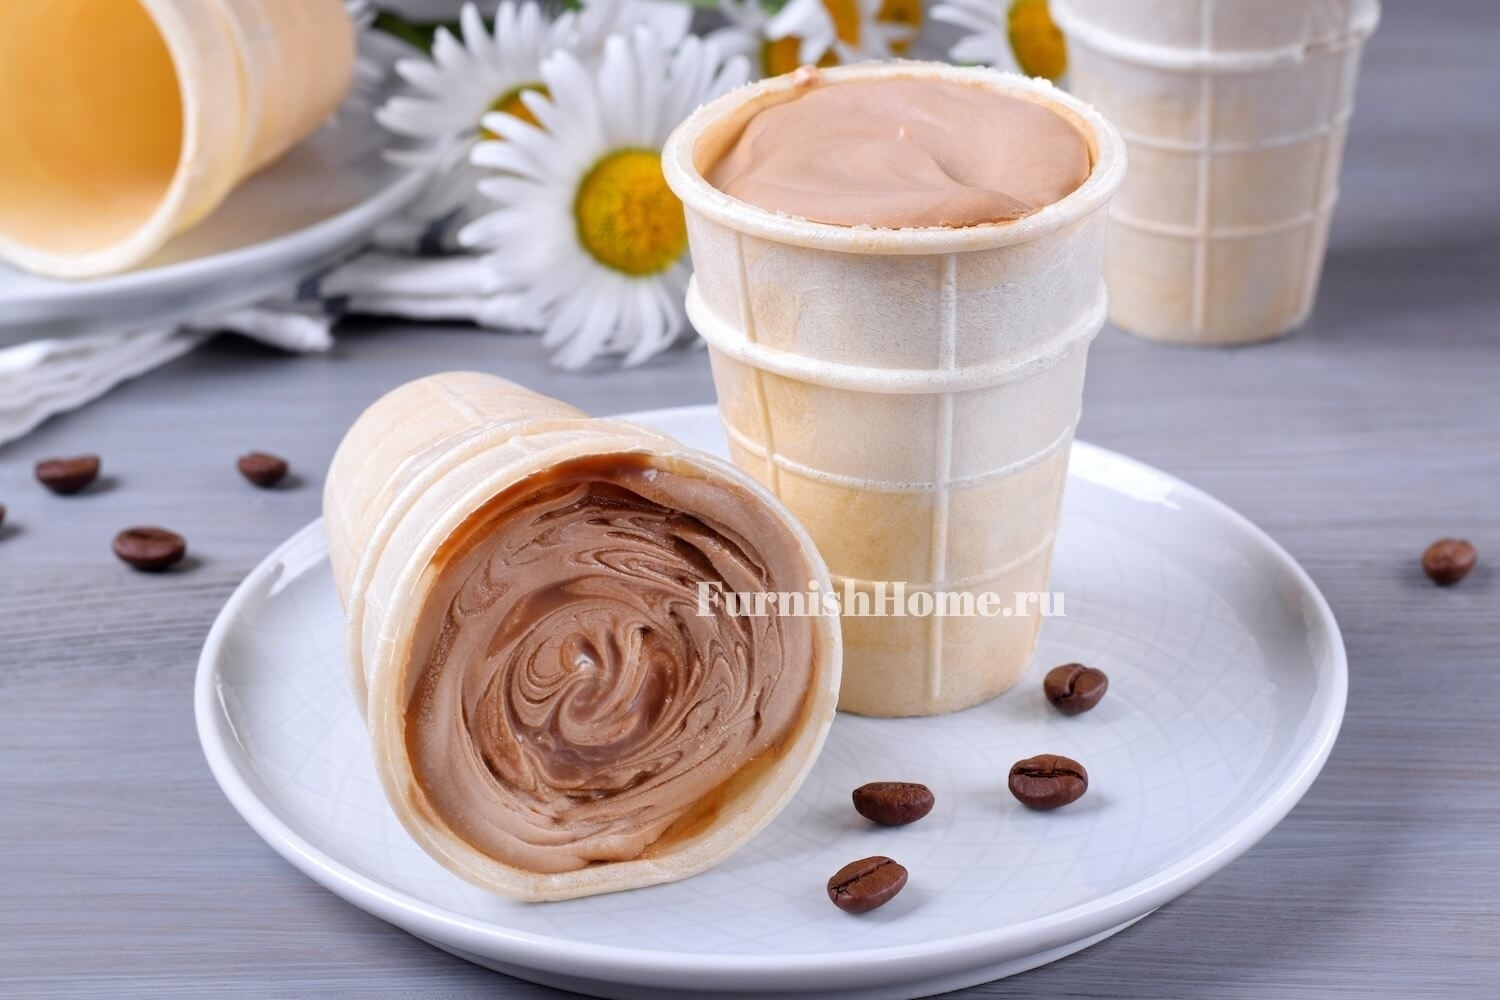 Кофейное мороженое из двух ингредиентов